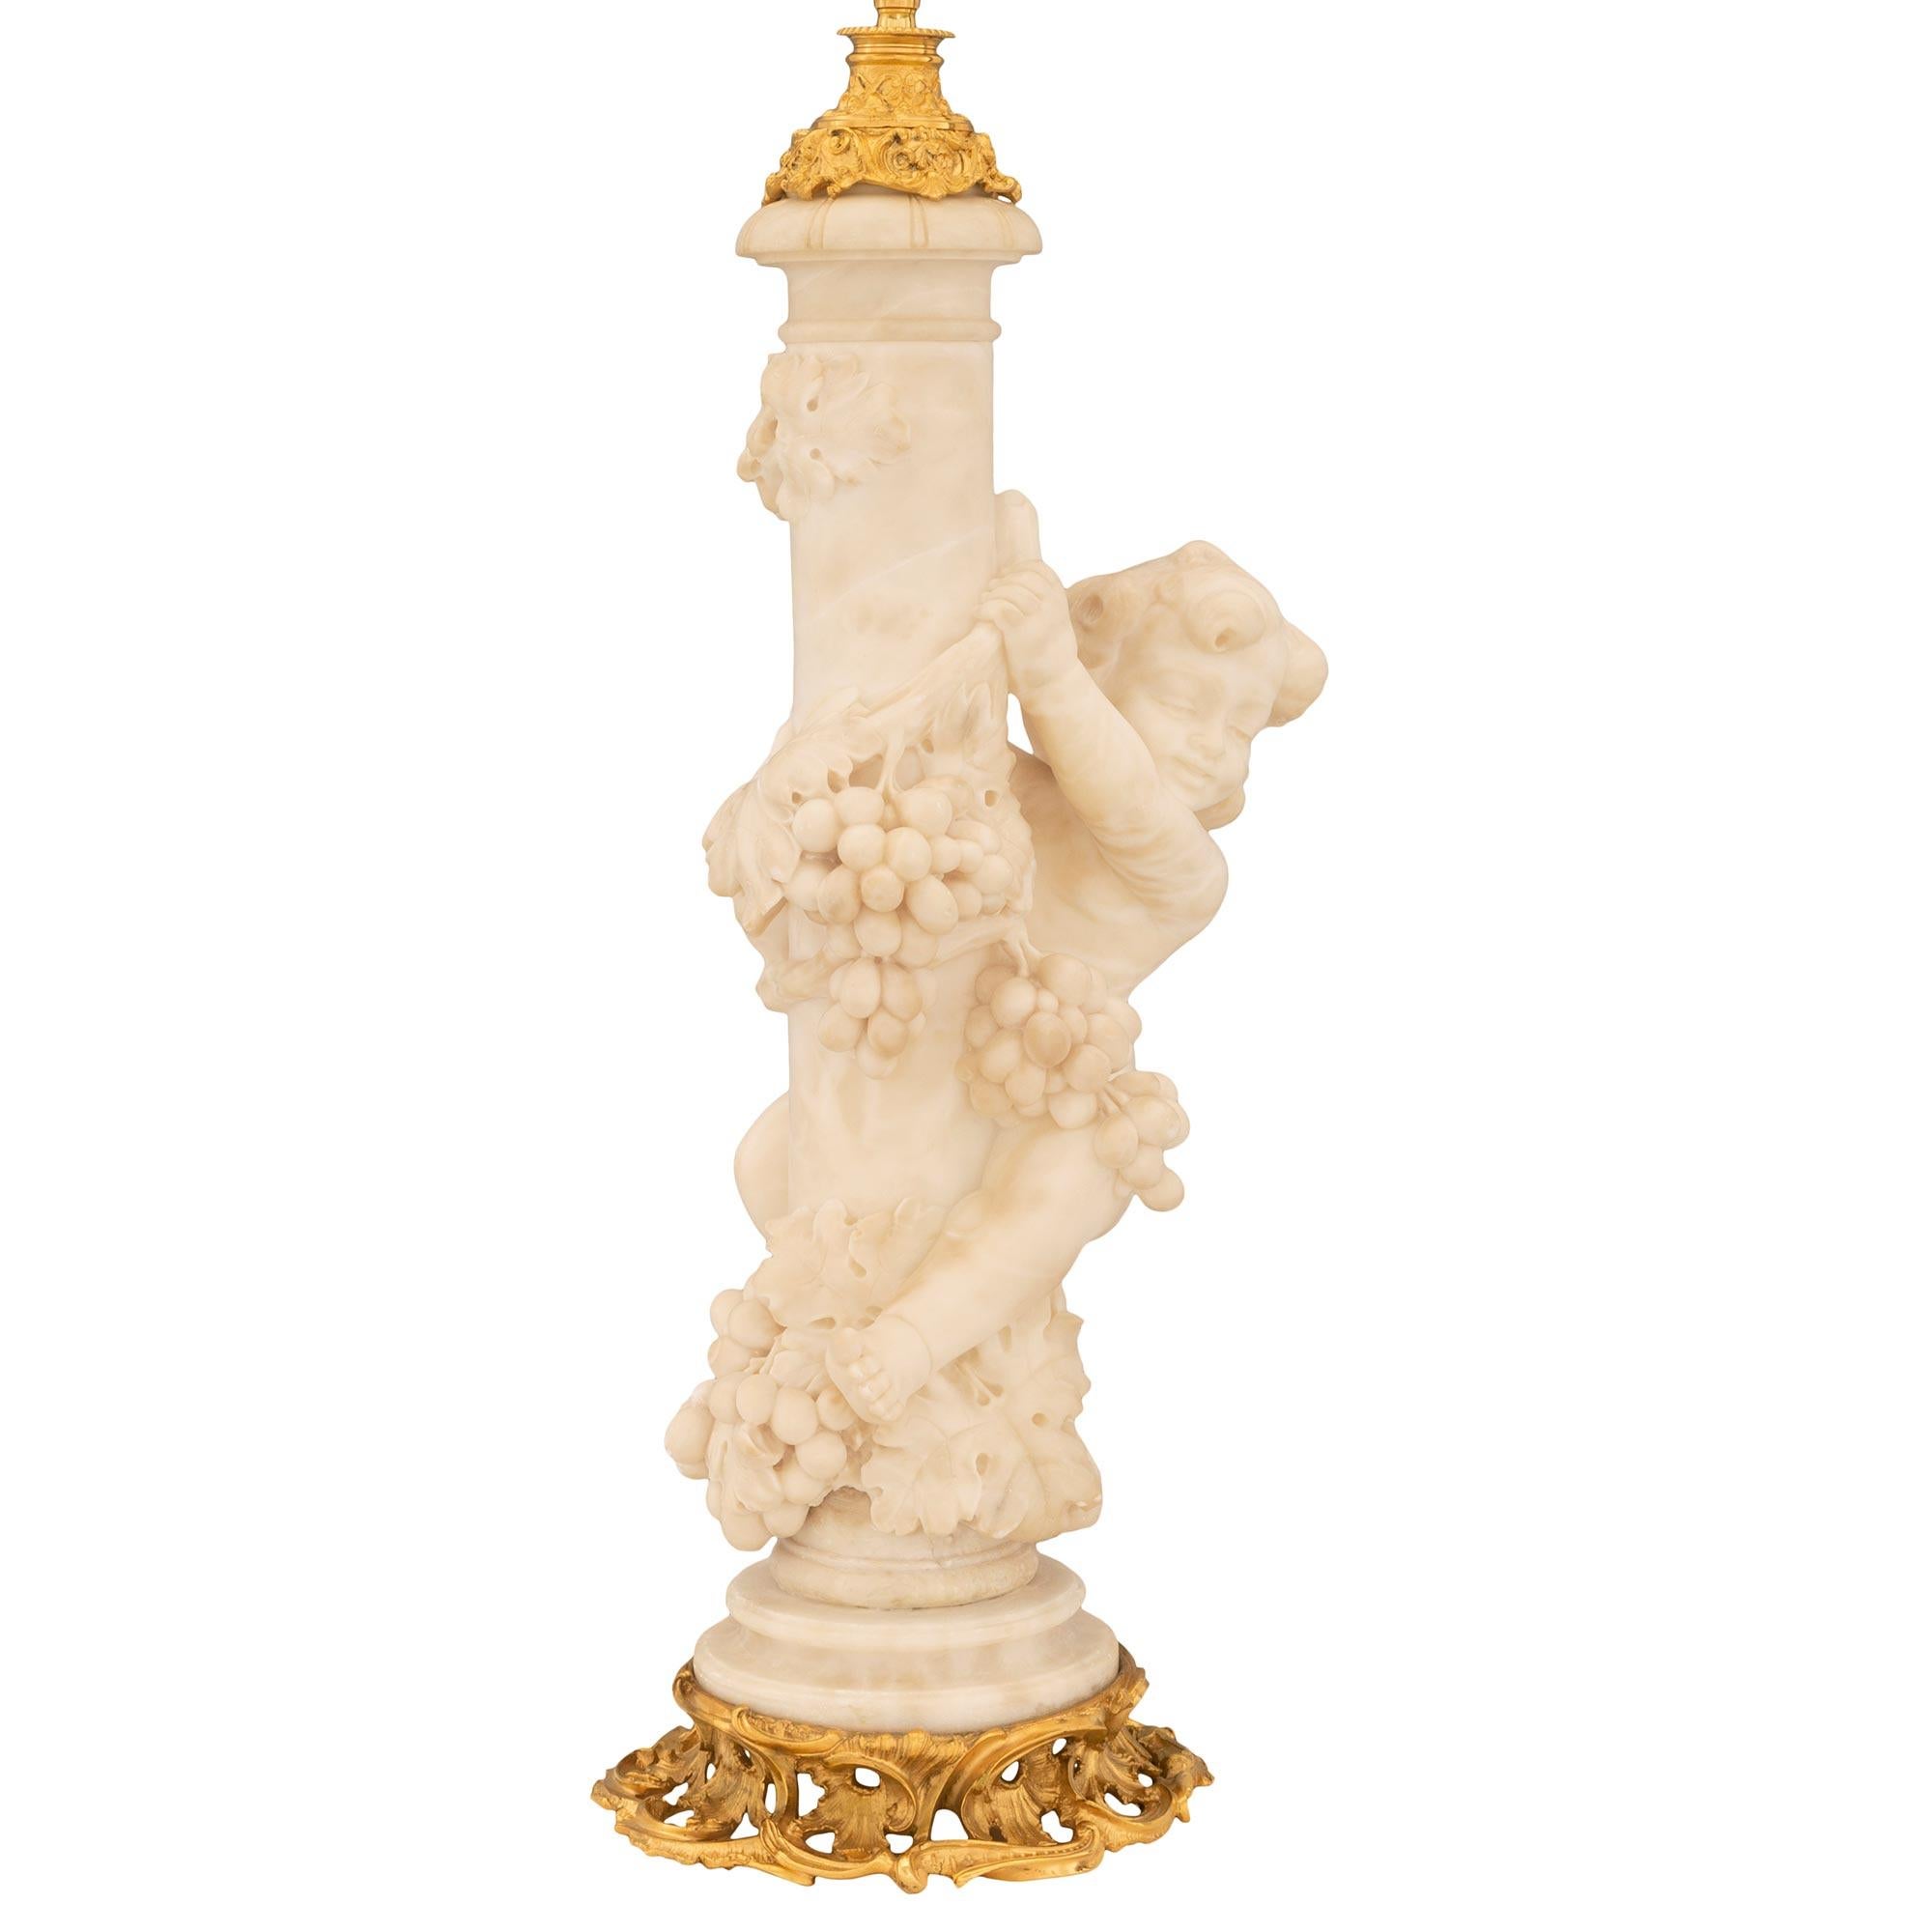 Eine außergewöhnliche und einzigartige französische Lampe aus dem 19. Jahrhundert aus Louis XV, Ormolu und Alabaster. Die Leuchte steht auf einem schönen, durchbrochenen, blattförmigen Ormolu-Sockel mit reich ziselierten Motiven in einer prächtigen